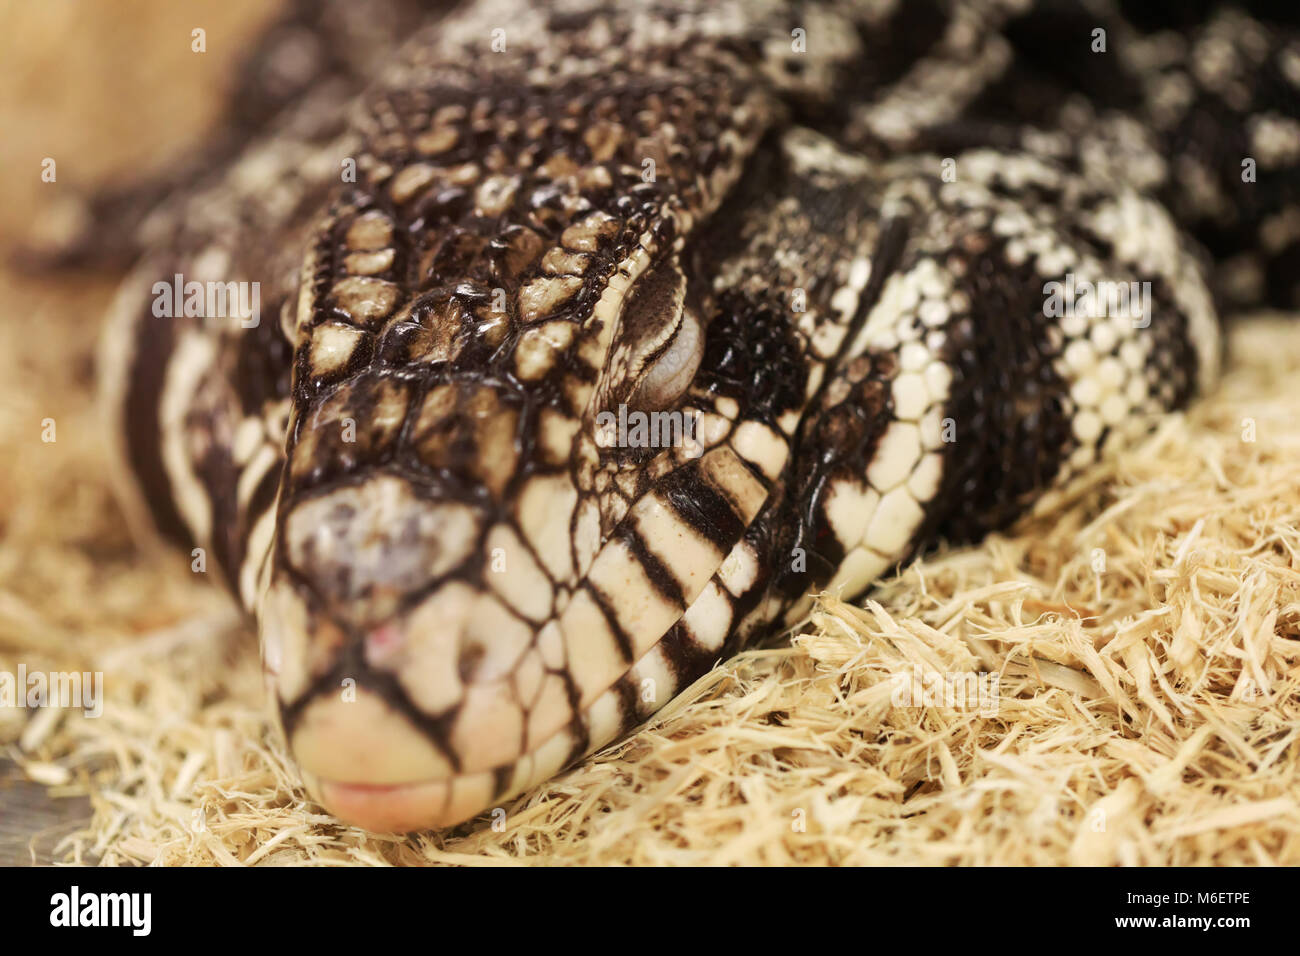 Le temps de sommeil en tégu adultes, close-up portrait. Tégu noir et blanc, appelé aussi Salvatot merianae ou Argentine tégu géant. Reptiles intelligents haut. Banque D'Images